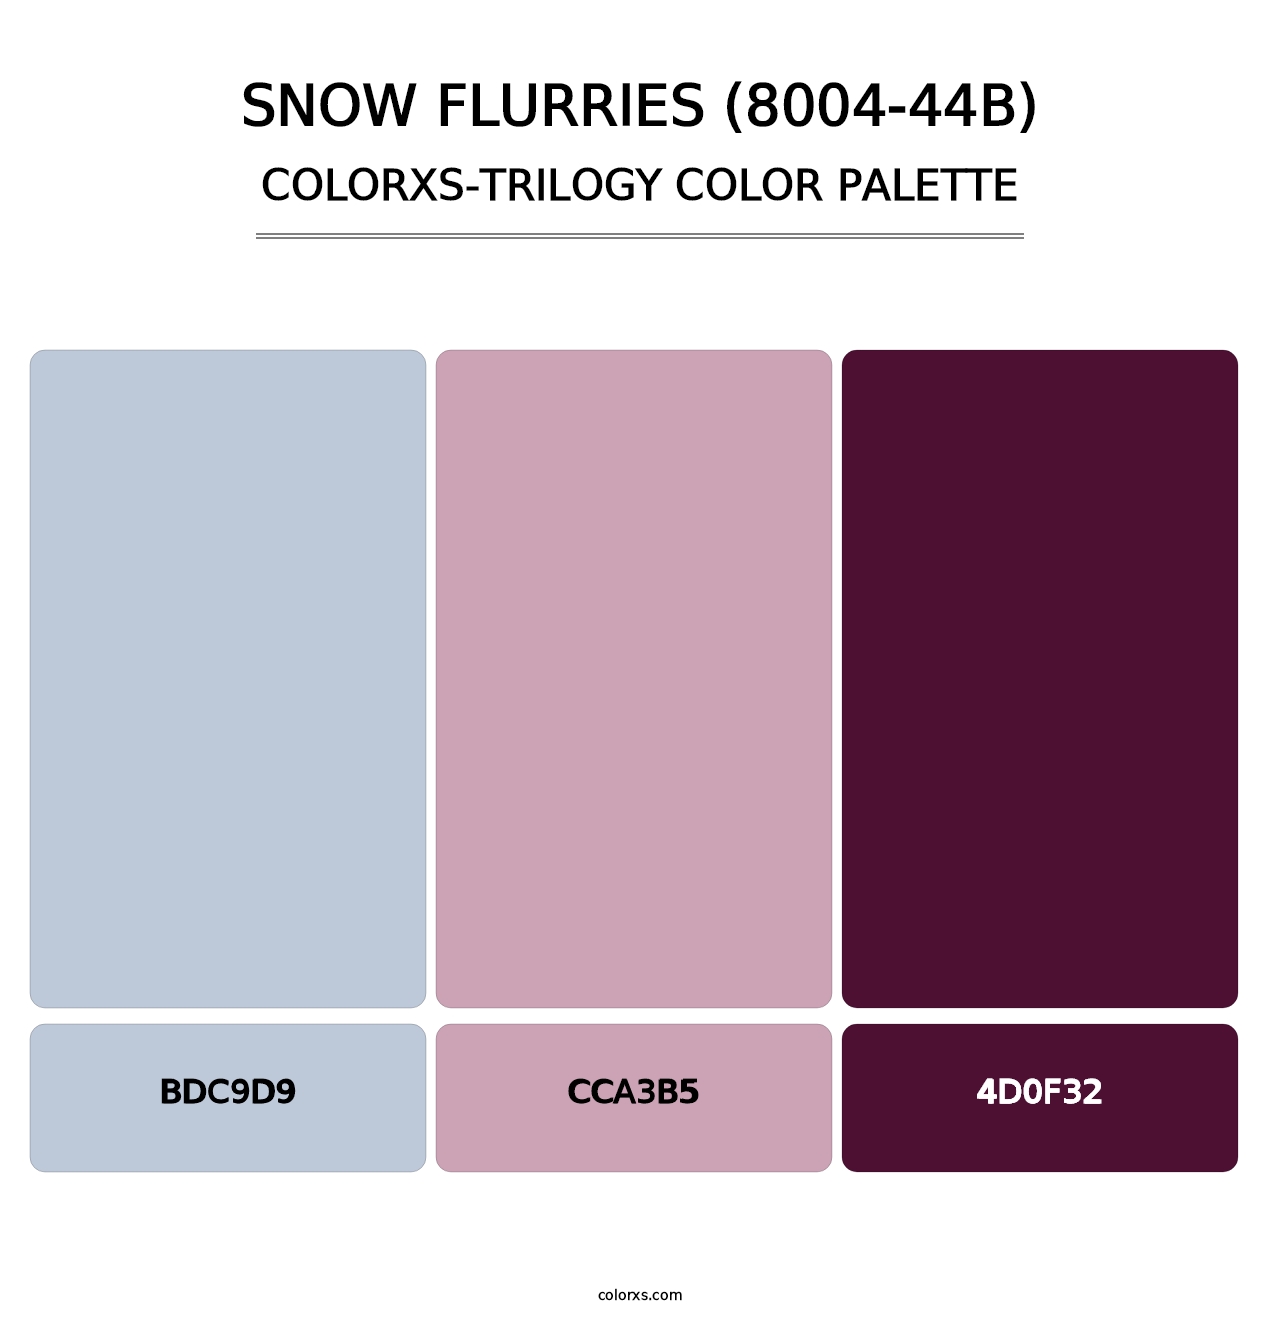 Snow Flurries (8004-44B) - Colorxs Trilogy Palette